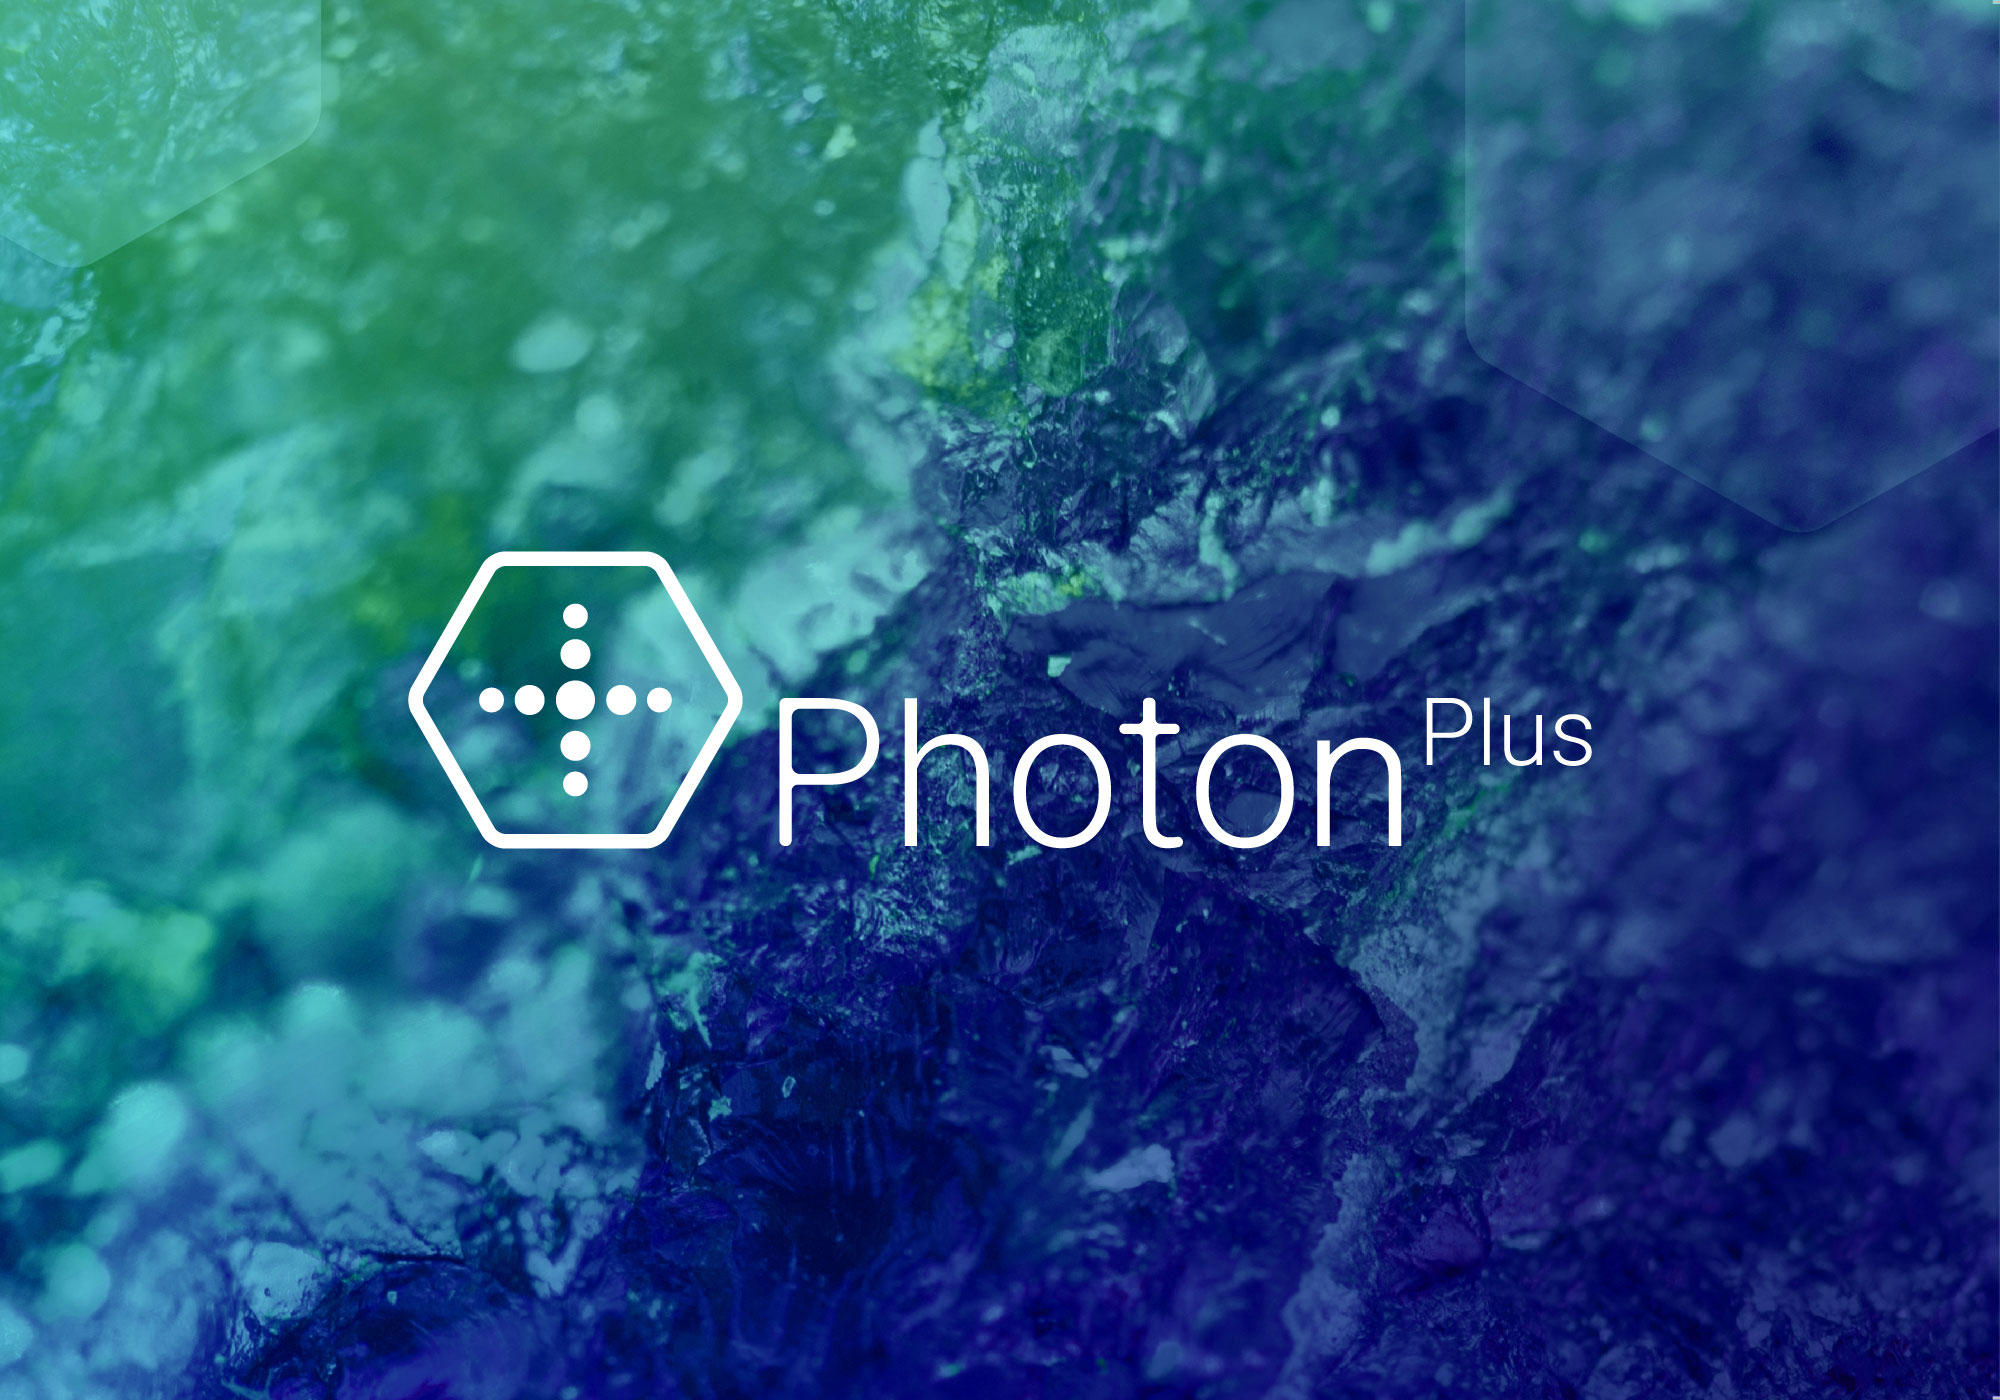 photonplus-06